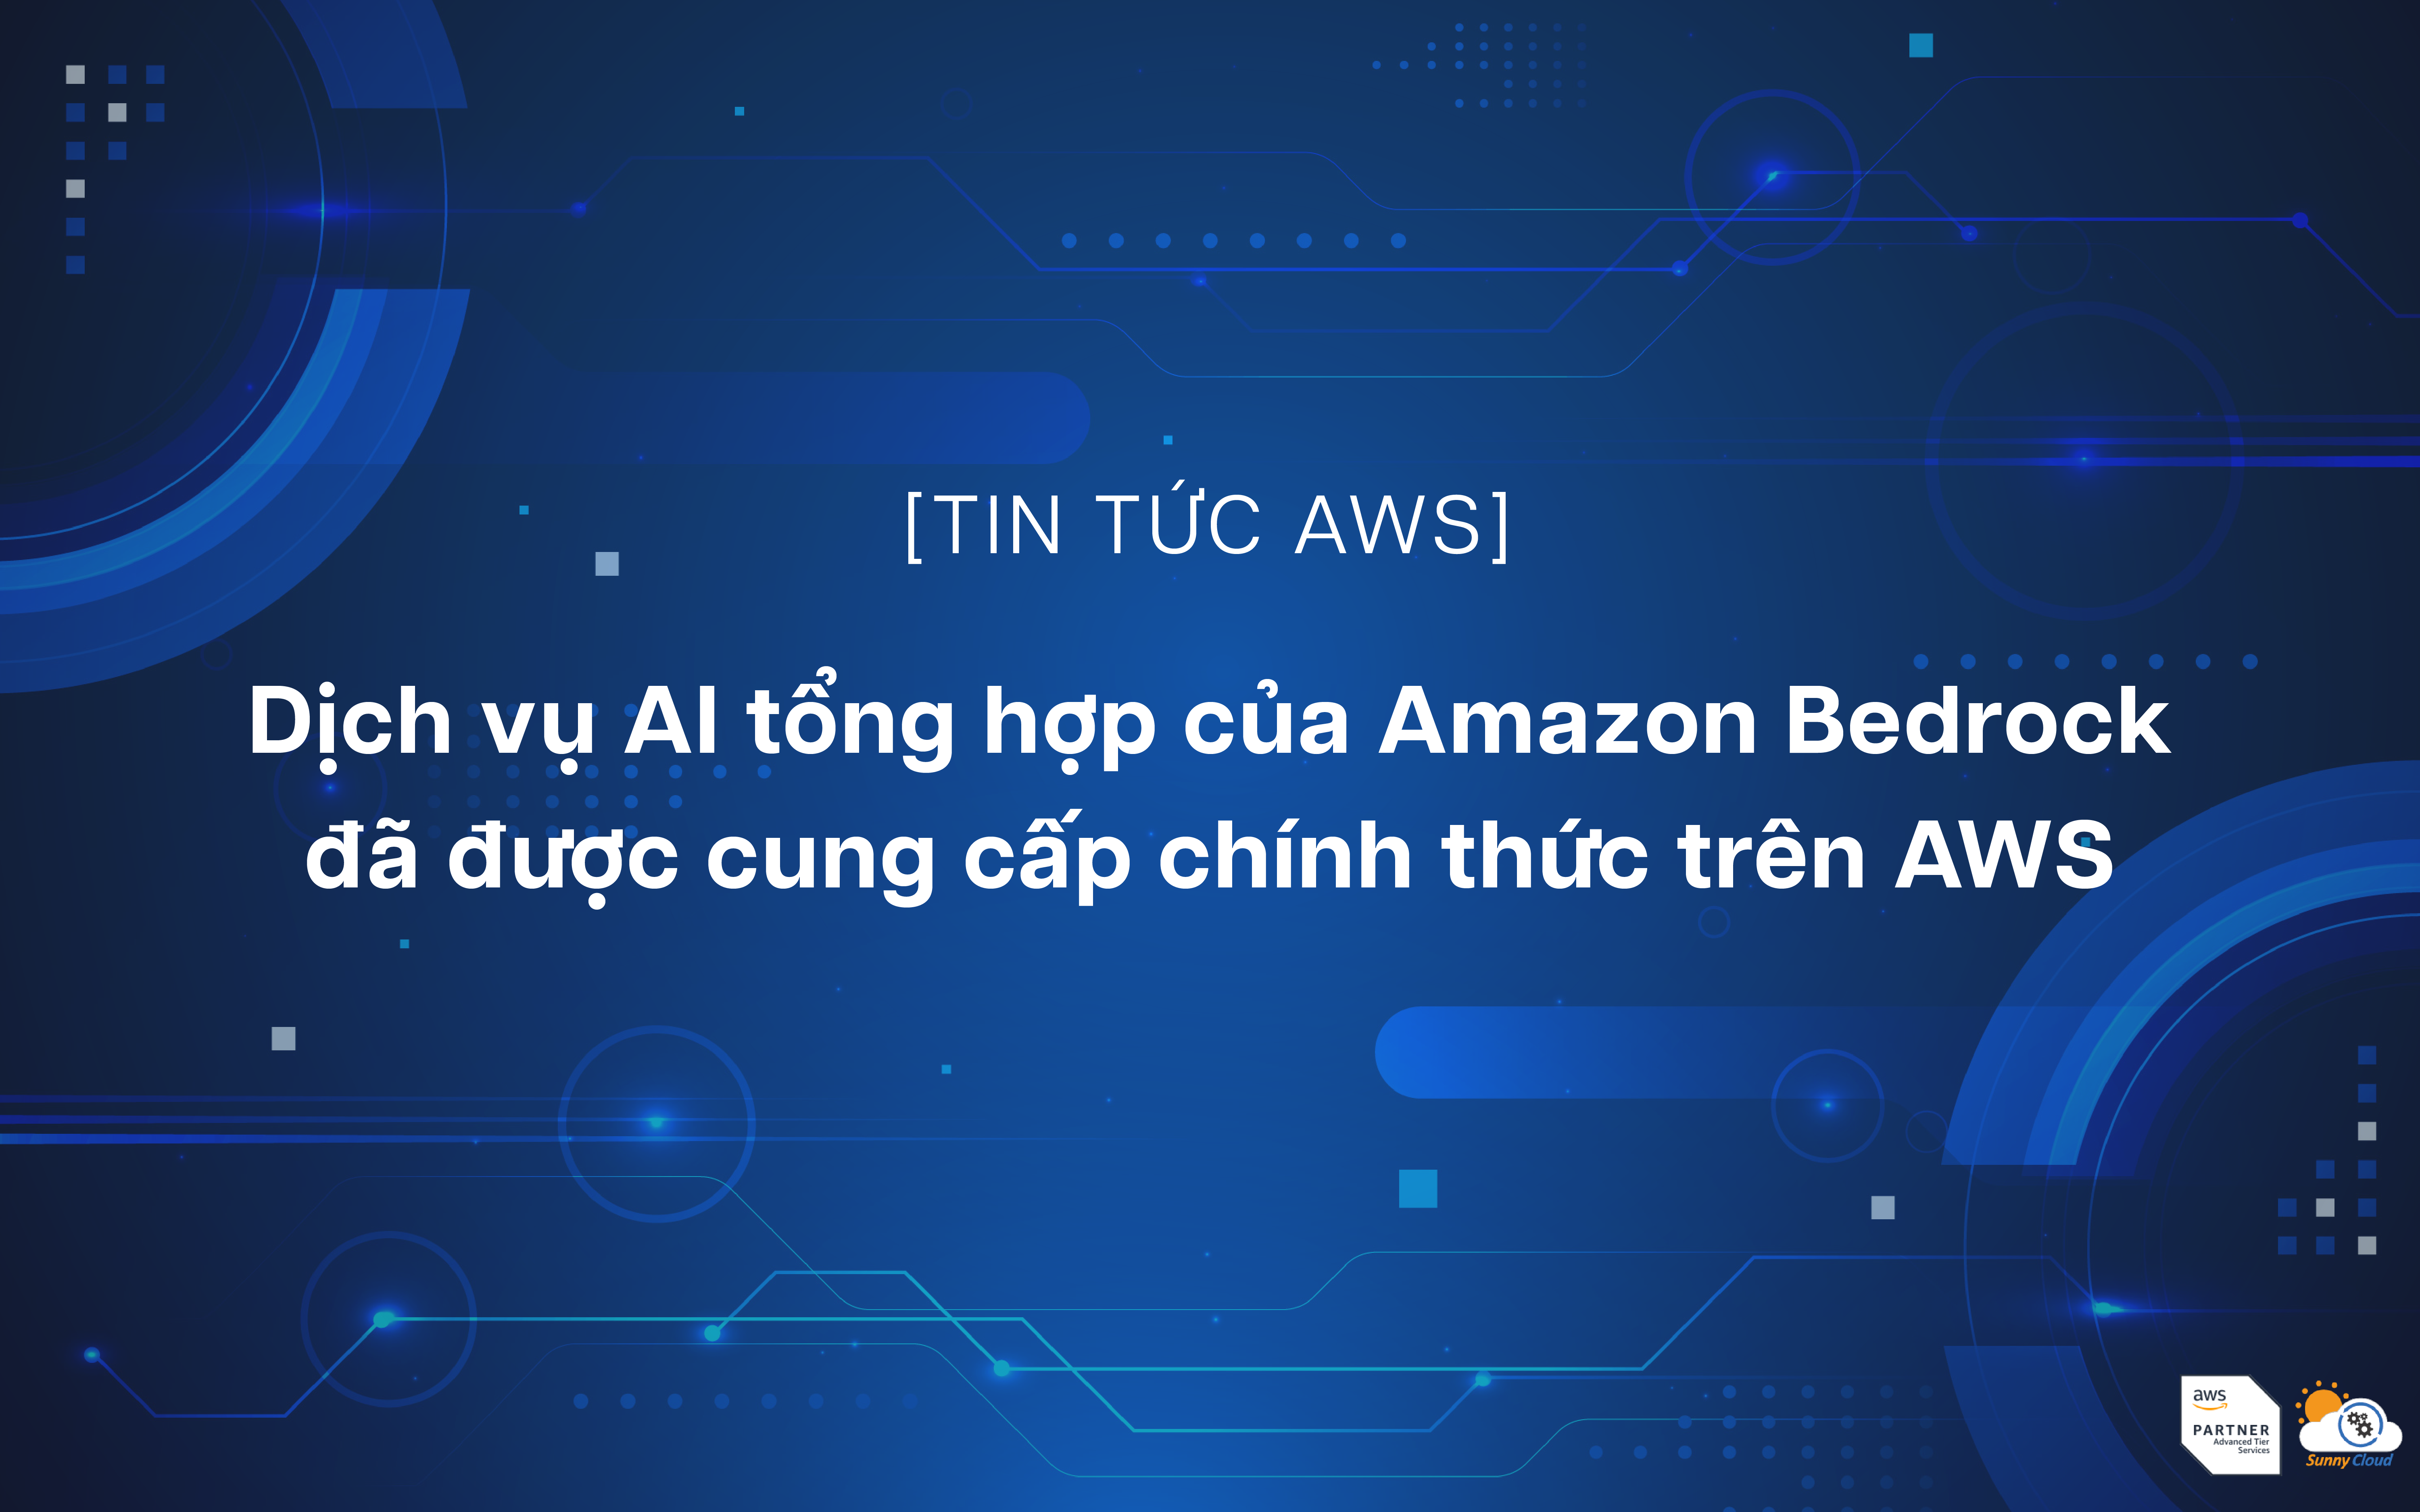 Dịch vụ AI tổng hợp của Amazon Bedrock đã được cung cấp chính thức trên AWS